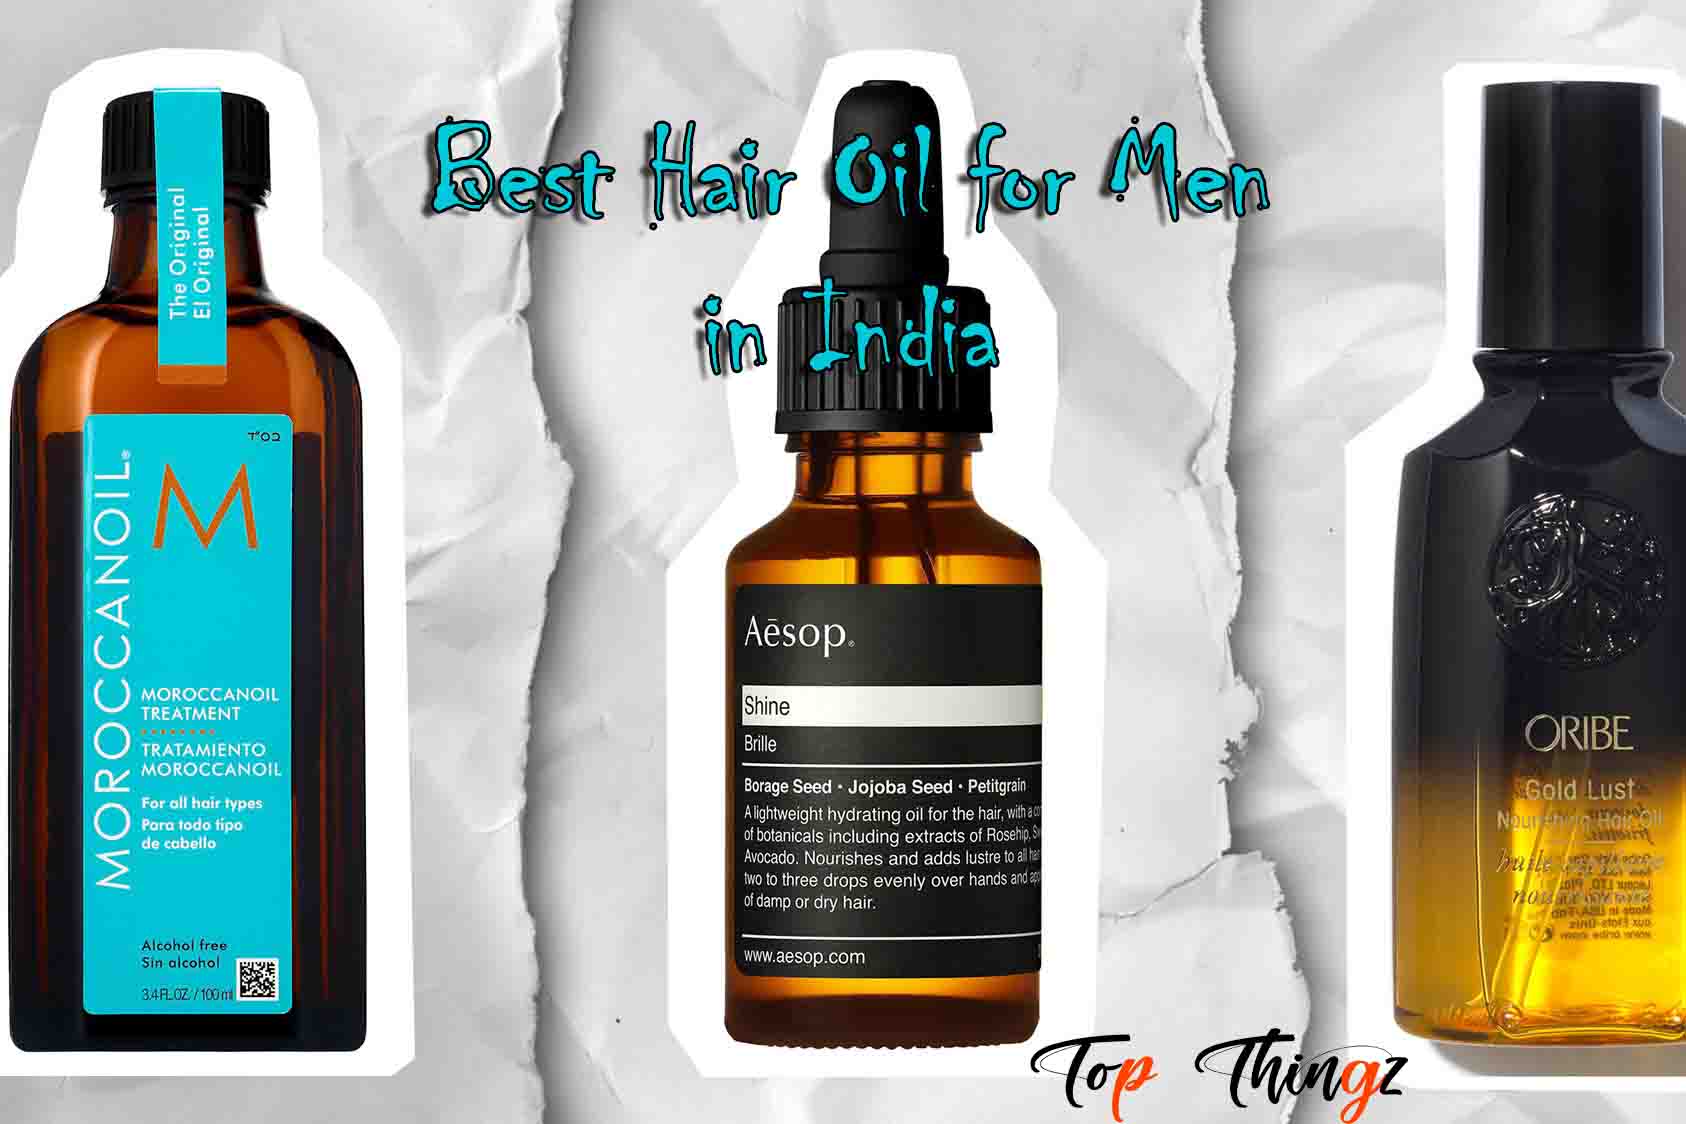 Best Hair Oil for Men in India